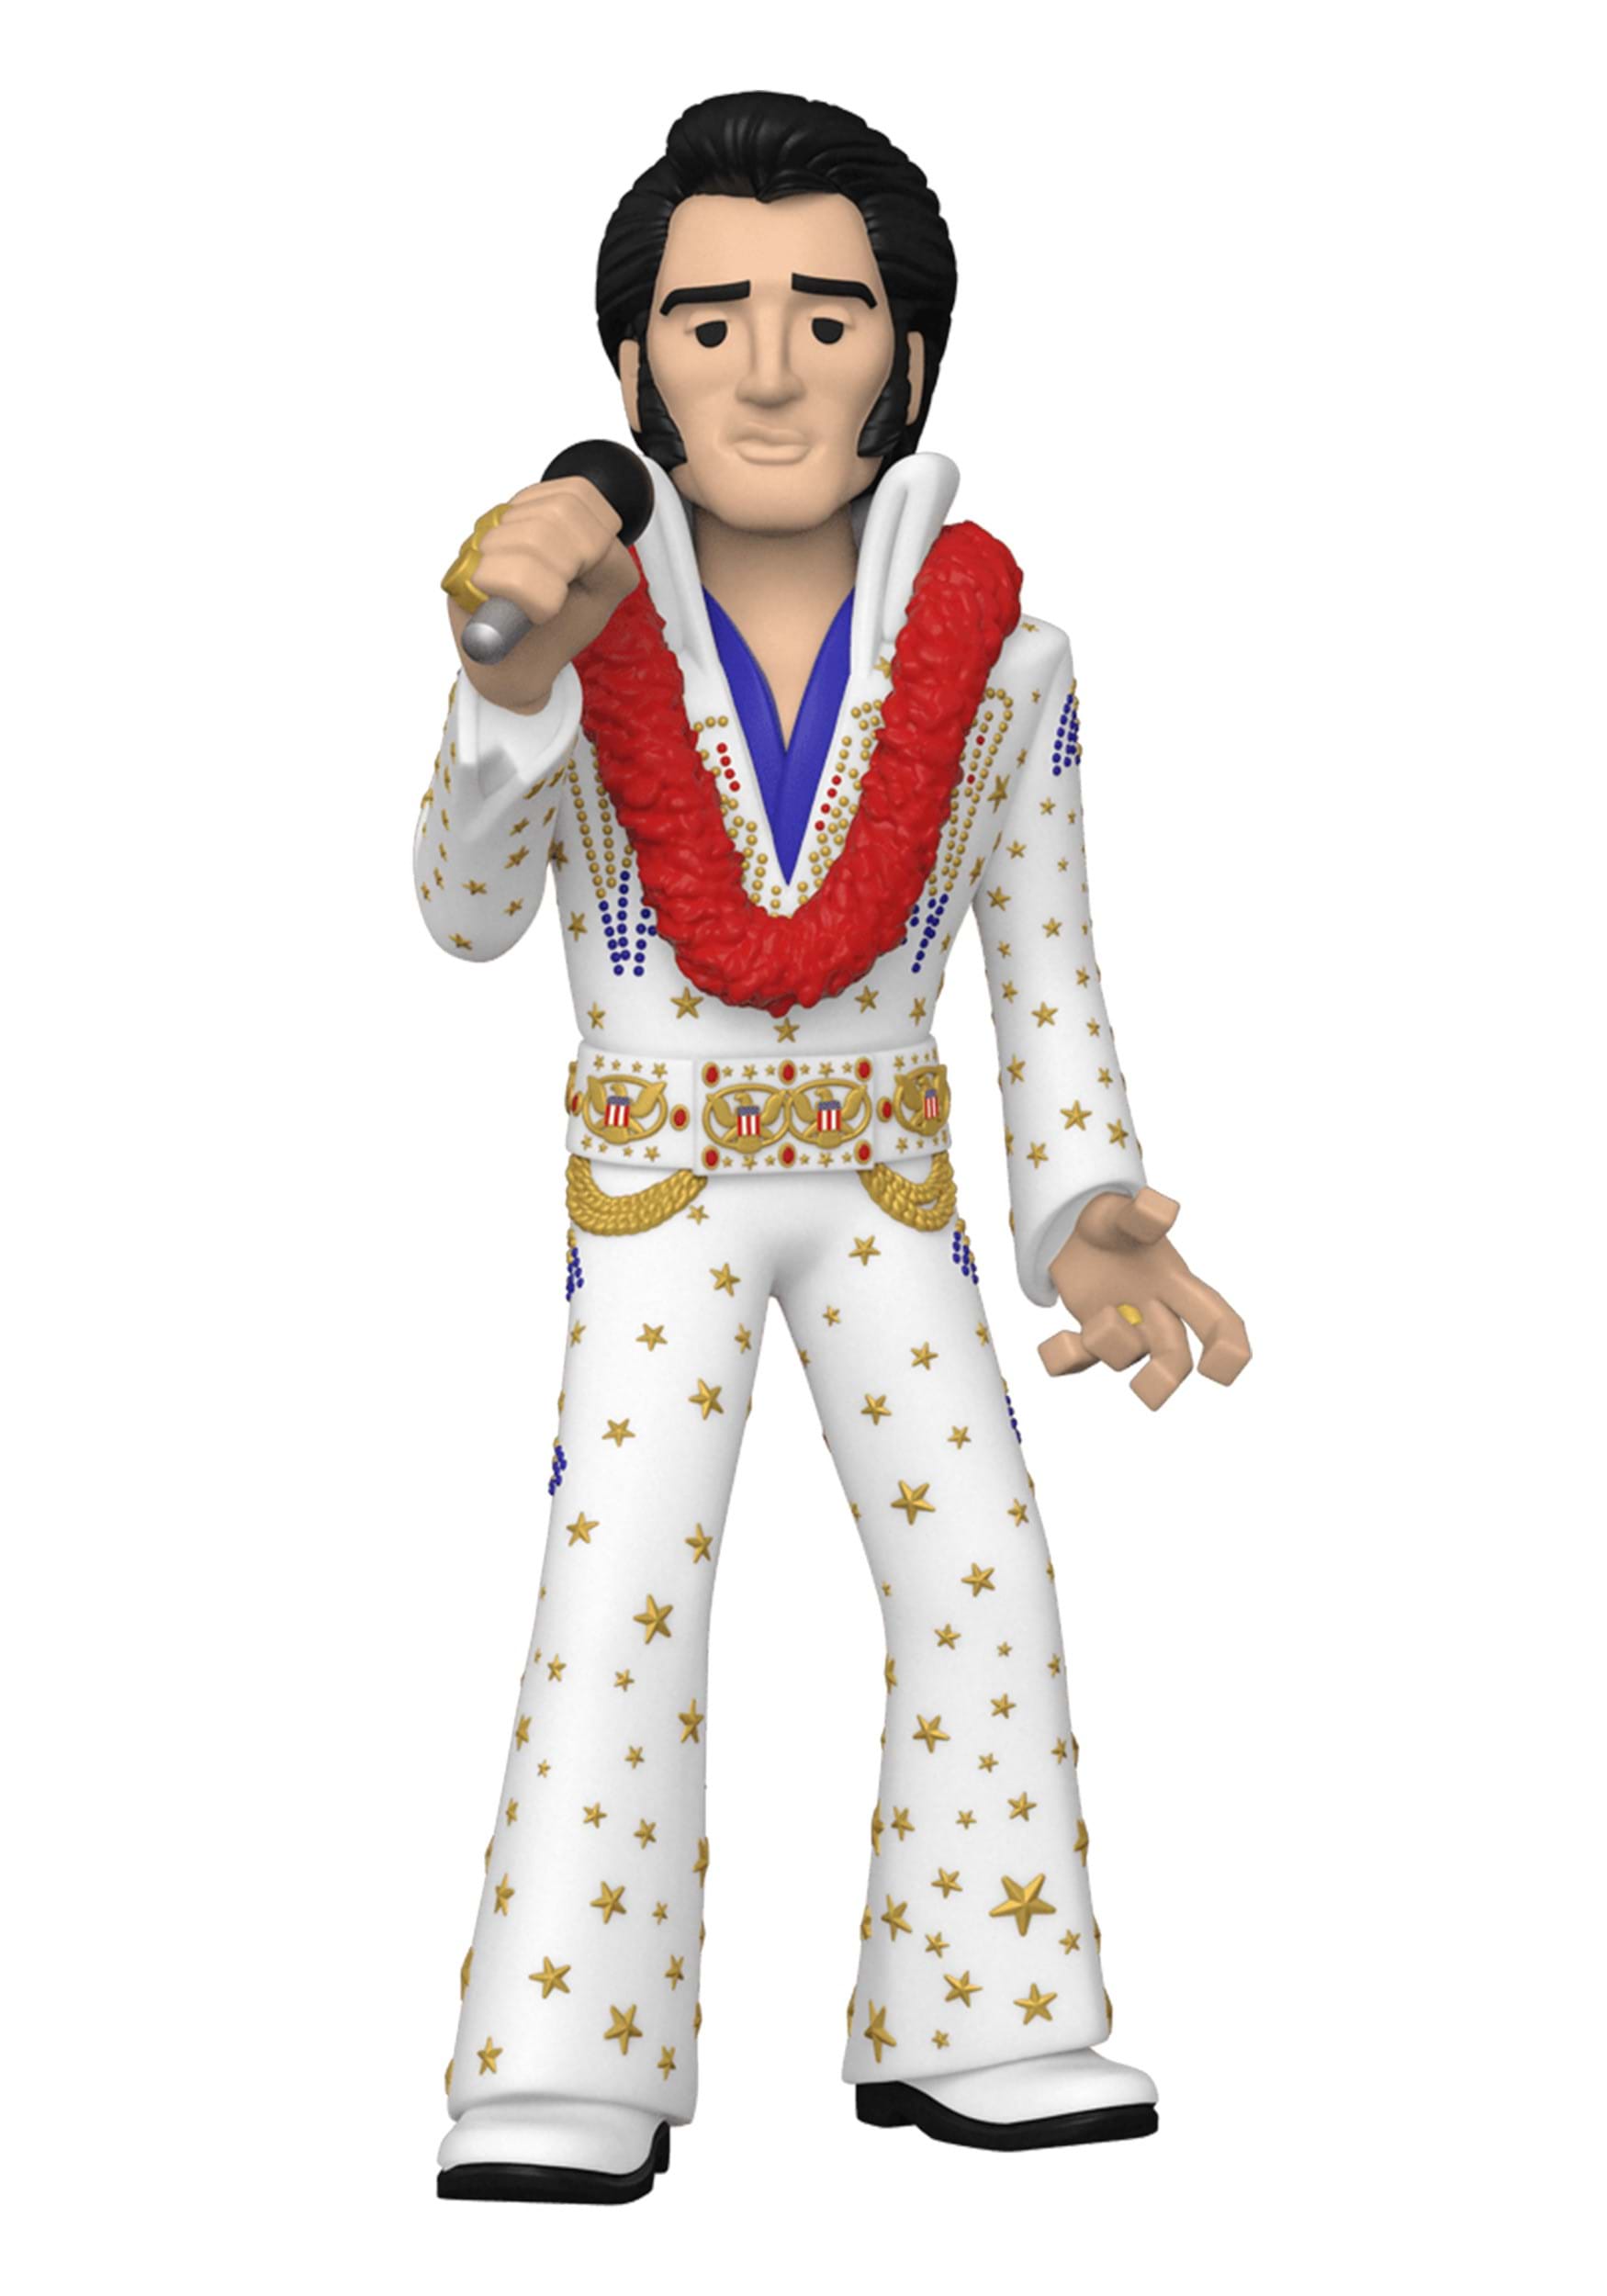 Vinyl Gold 5-Inch Elvis Premium Vinyl Figure